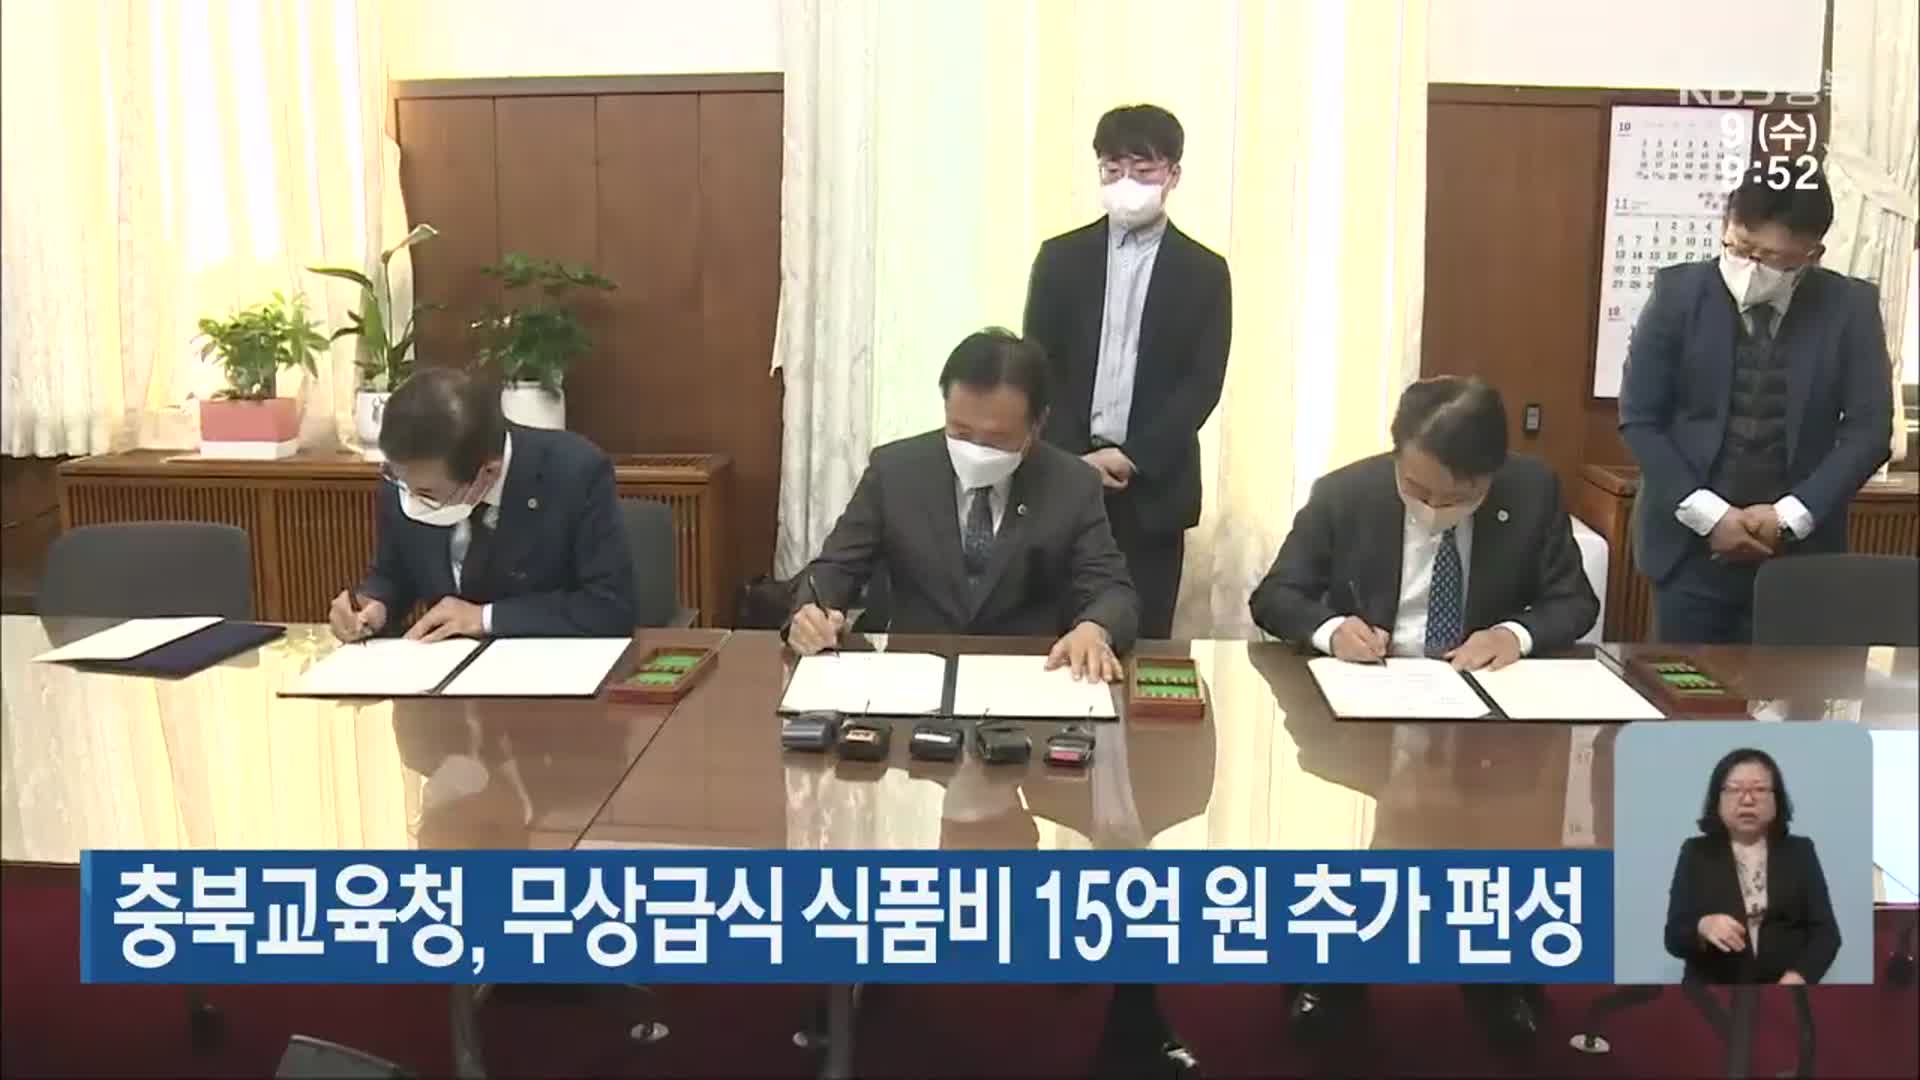 충북교육청, 무상급식 식품비 15억 원 추가 편성